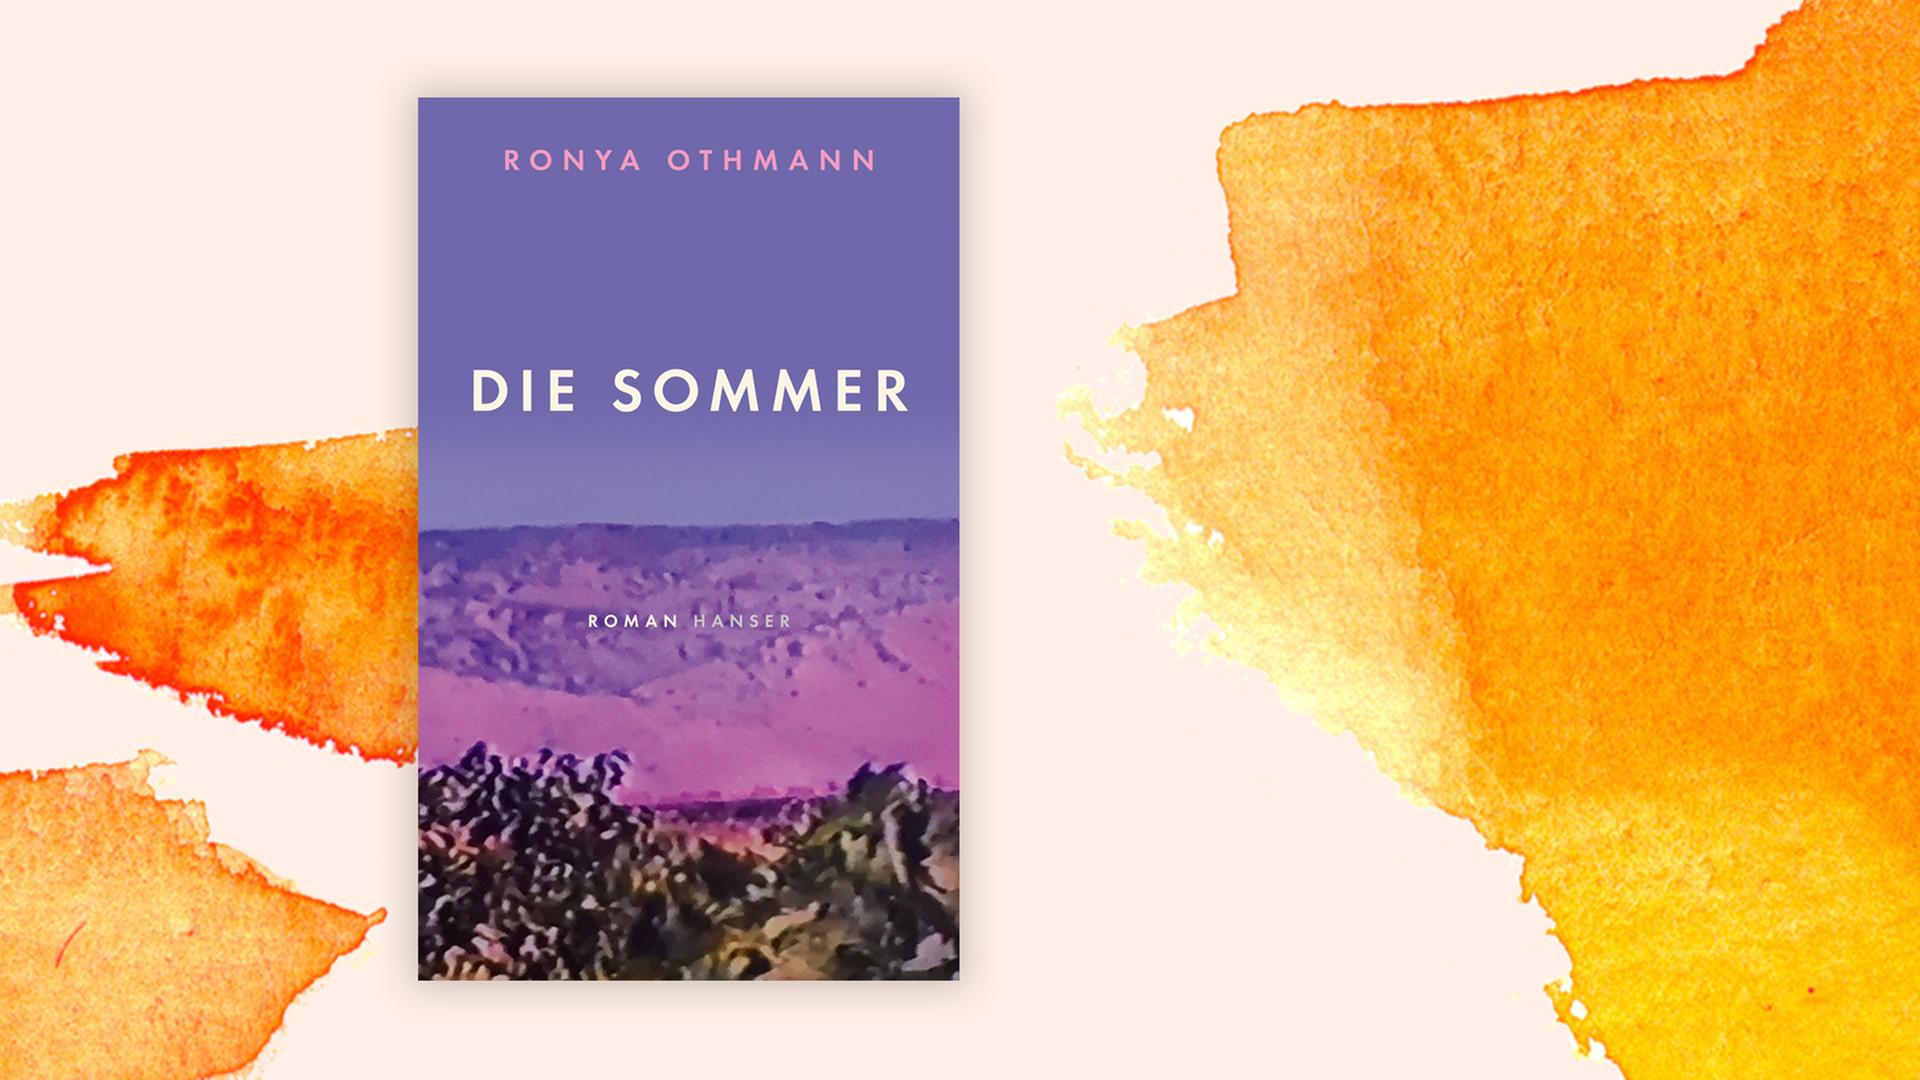 Das Buchcover "Die Sommer" von Ronya Othmann vor einem grafischen Hintergrund